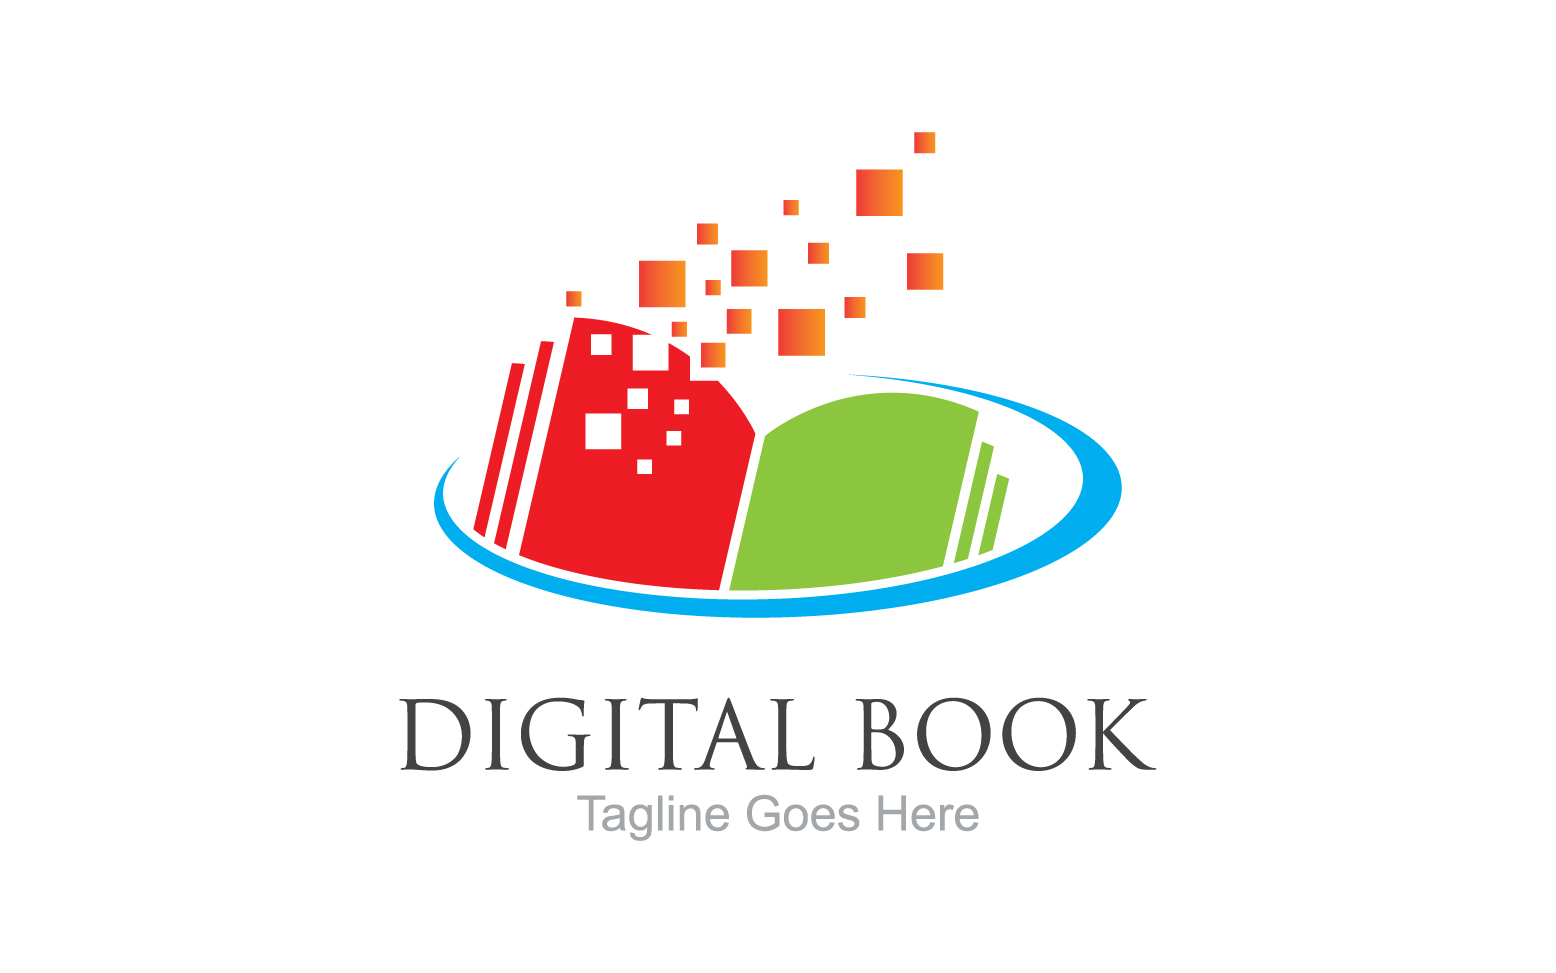 Book reading education logo vector v20